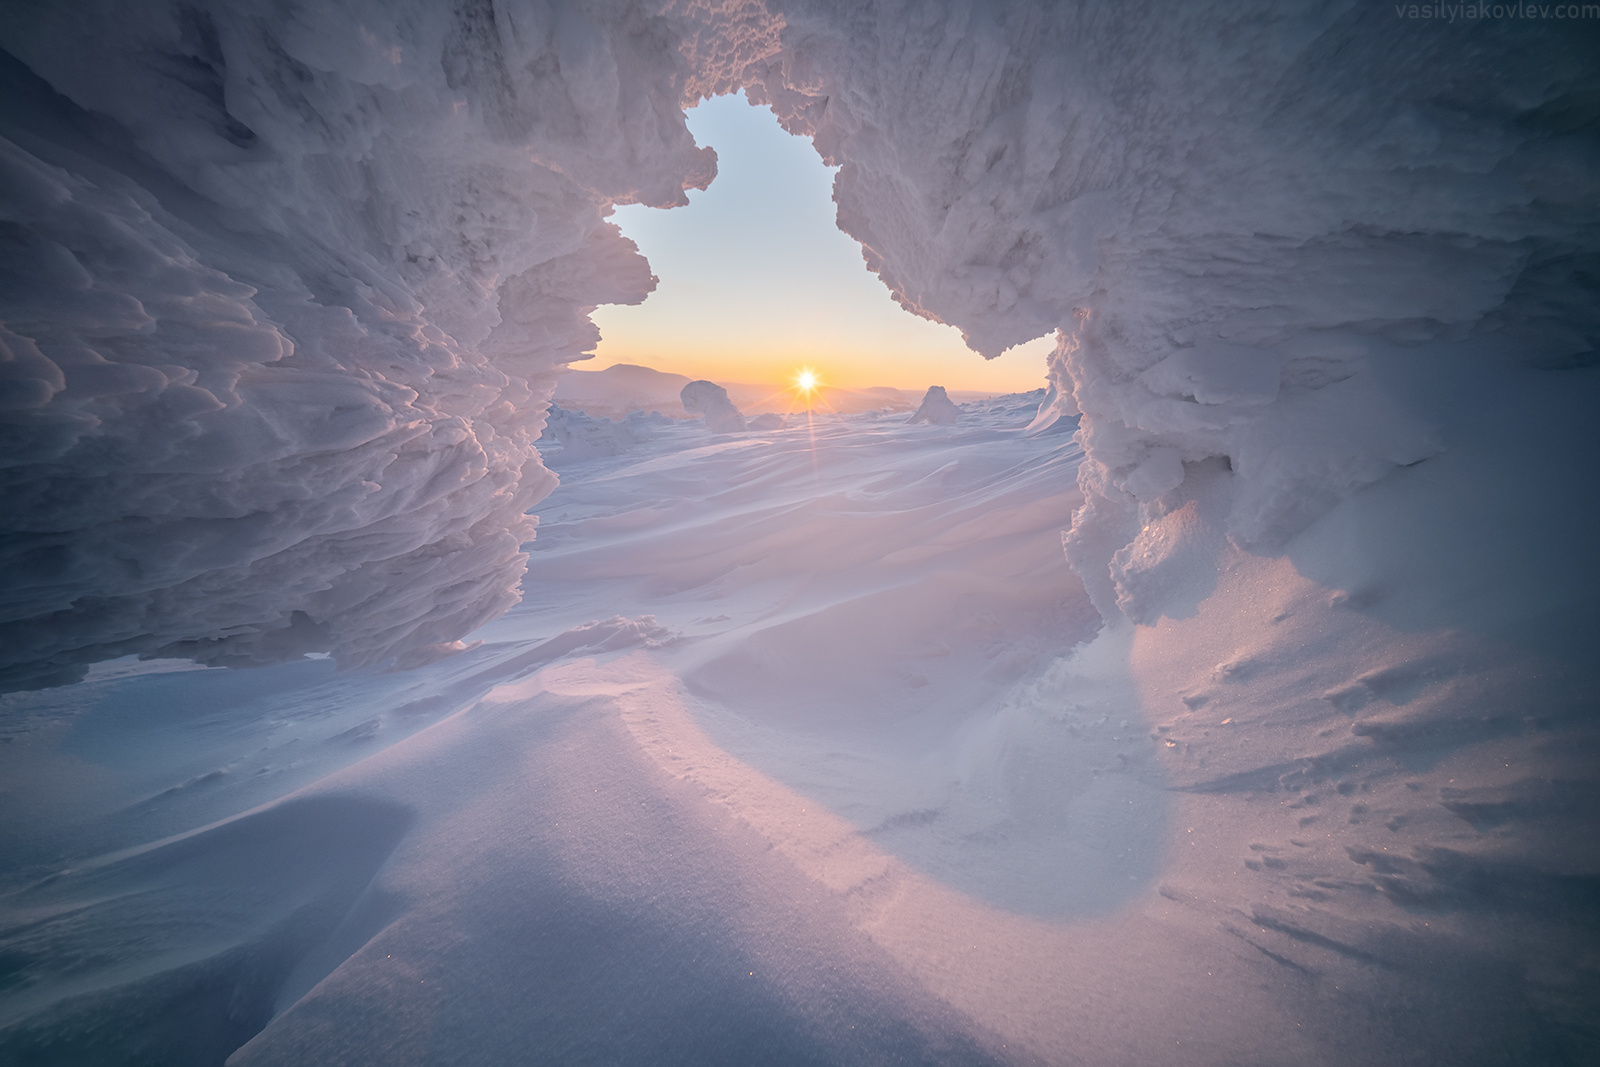 Окно в зиму гух урал россия зима горы снег василийяковлев яковлевфототур